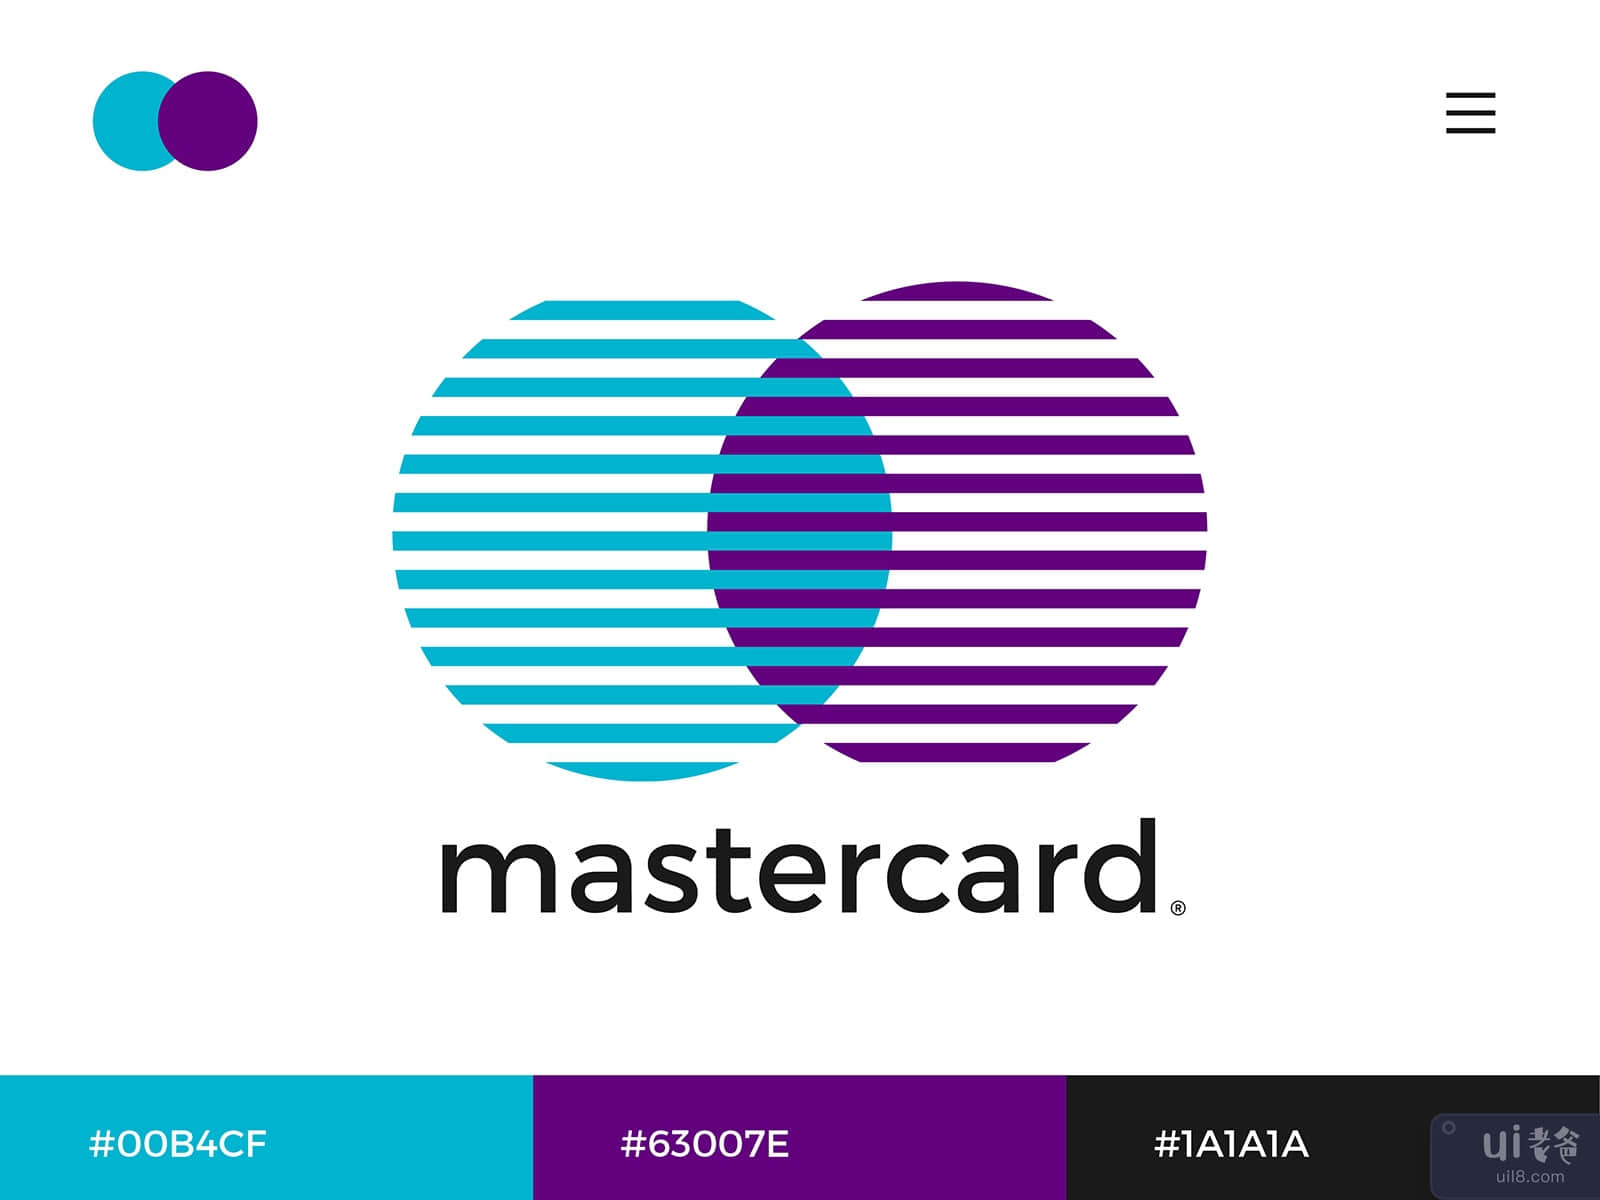 Mastercard Logo Redesign